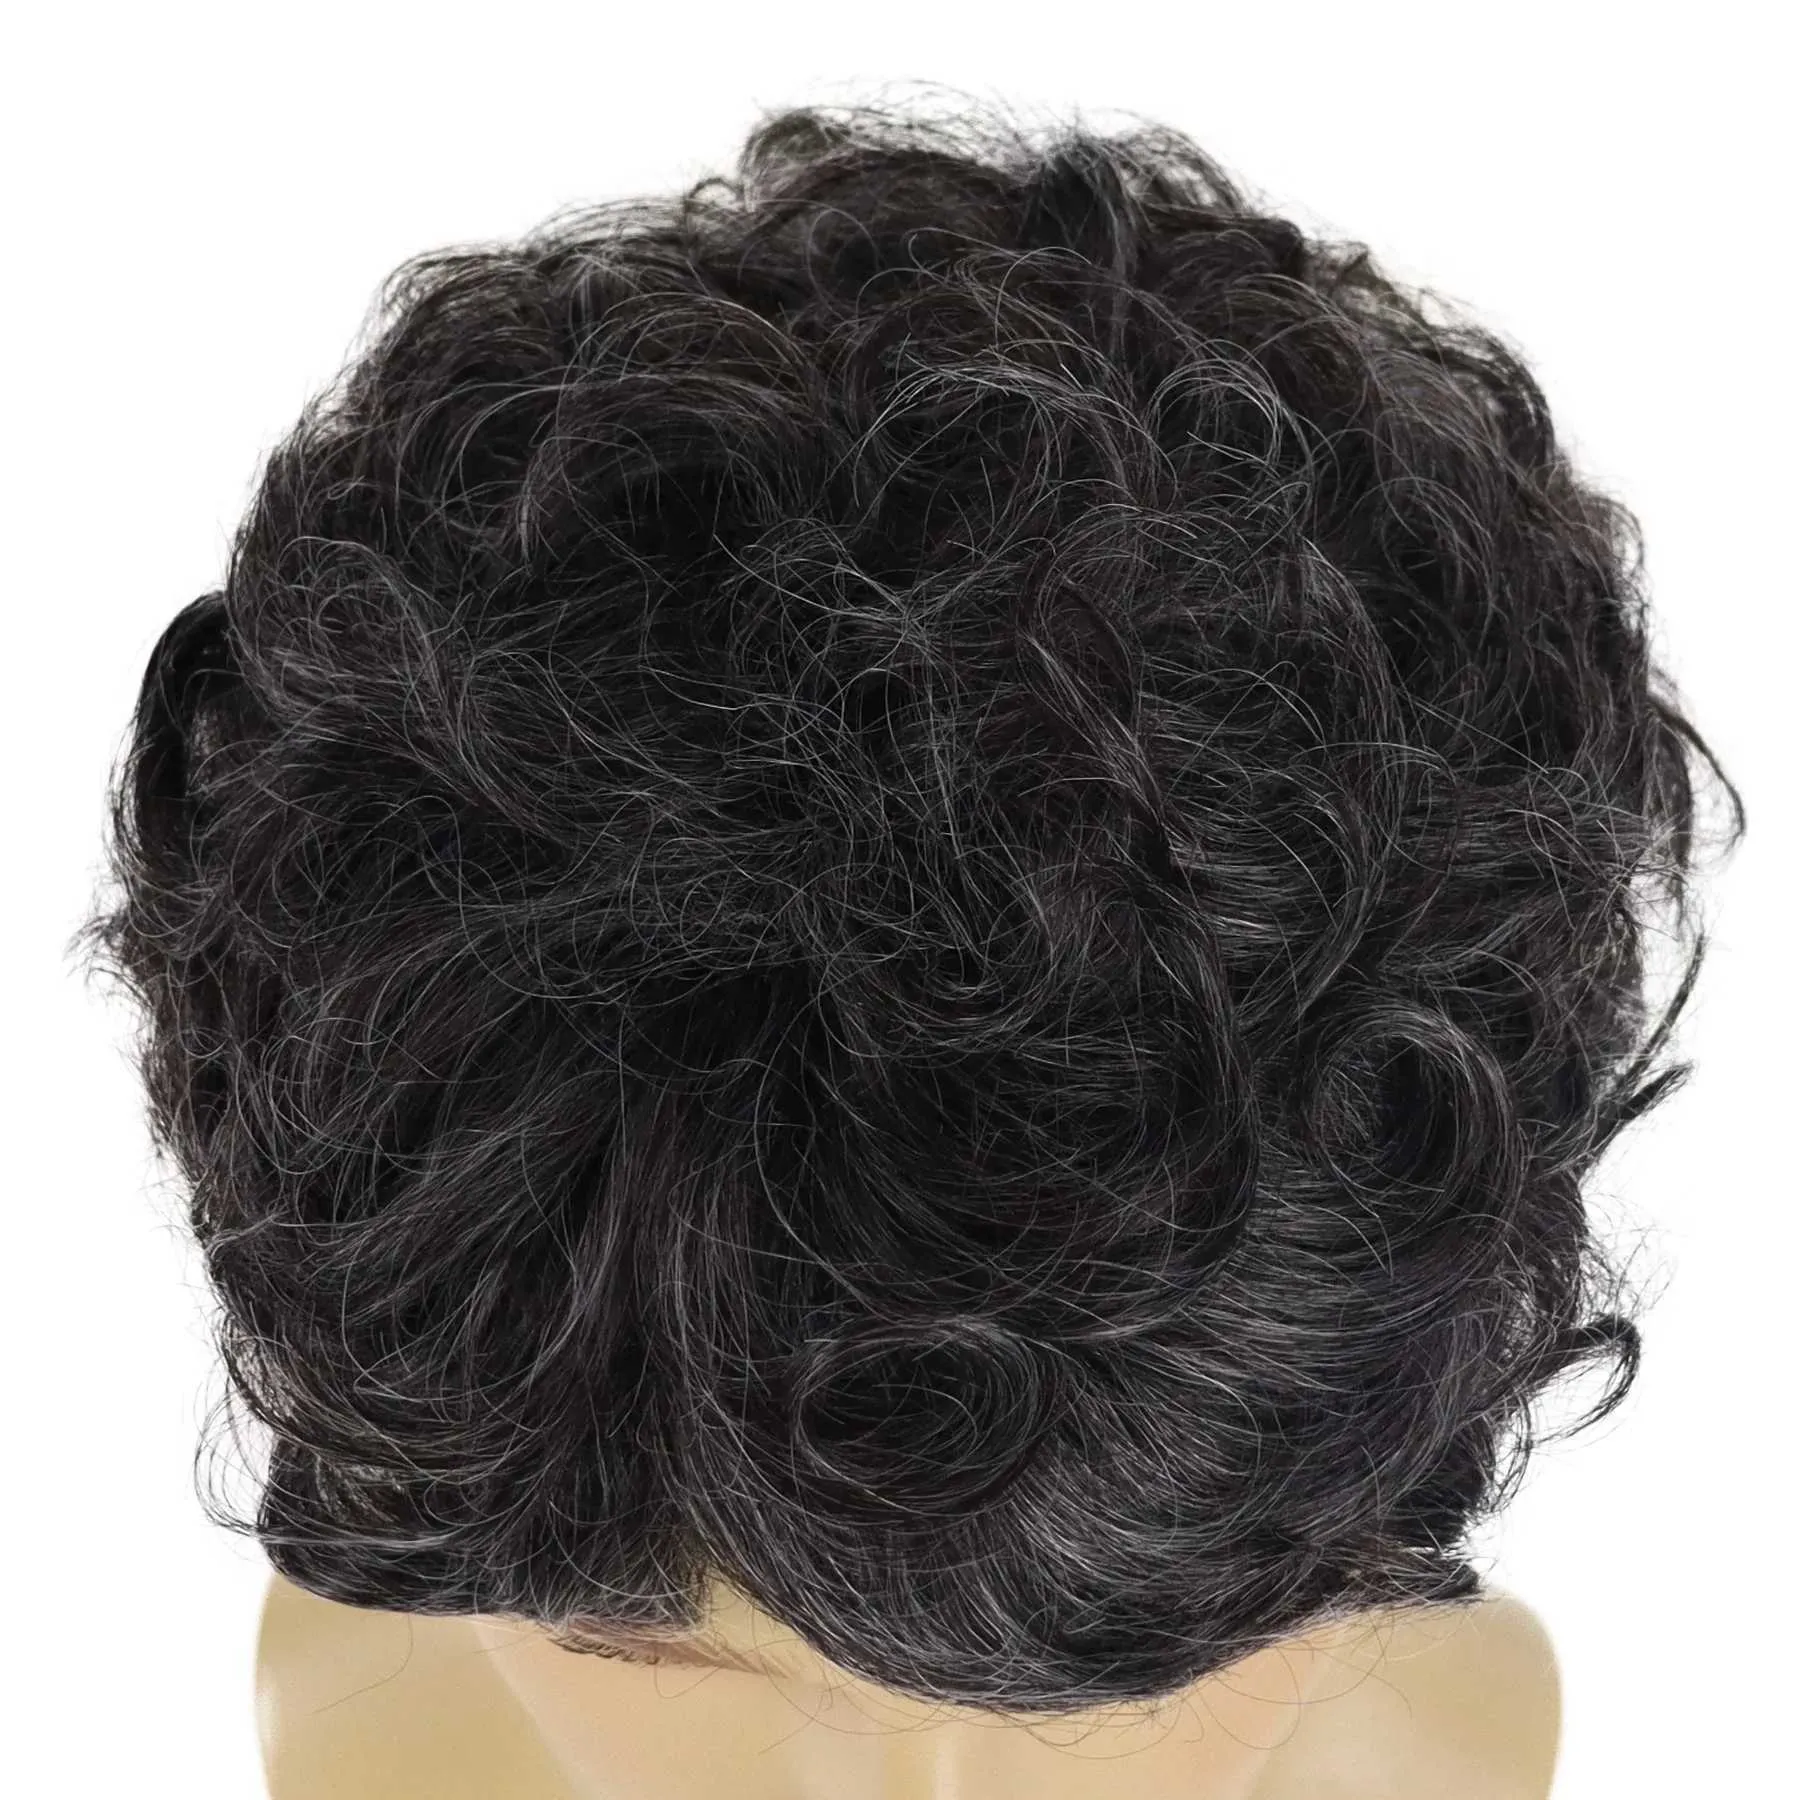 Nxy vhair wigs gnimegil syntetisk man peruk svart mix grå hår kort lockigt för manlig far gåva naturligt värmebeständigt cosplay party 240330